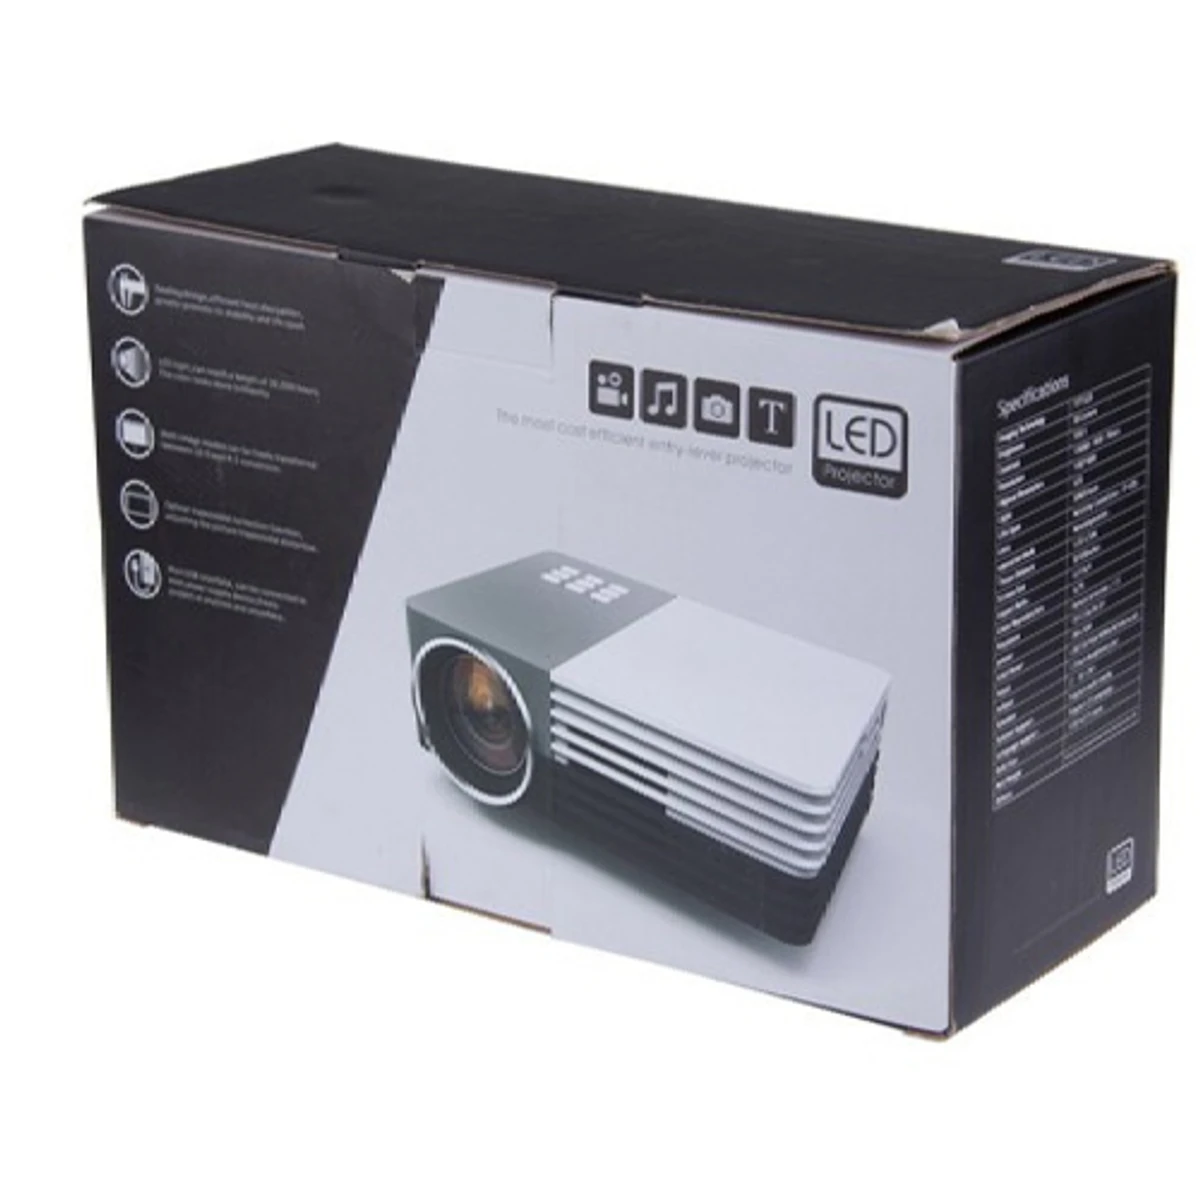 GM50 Portable Mini Video Projector